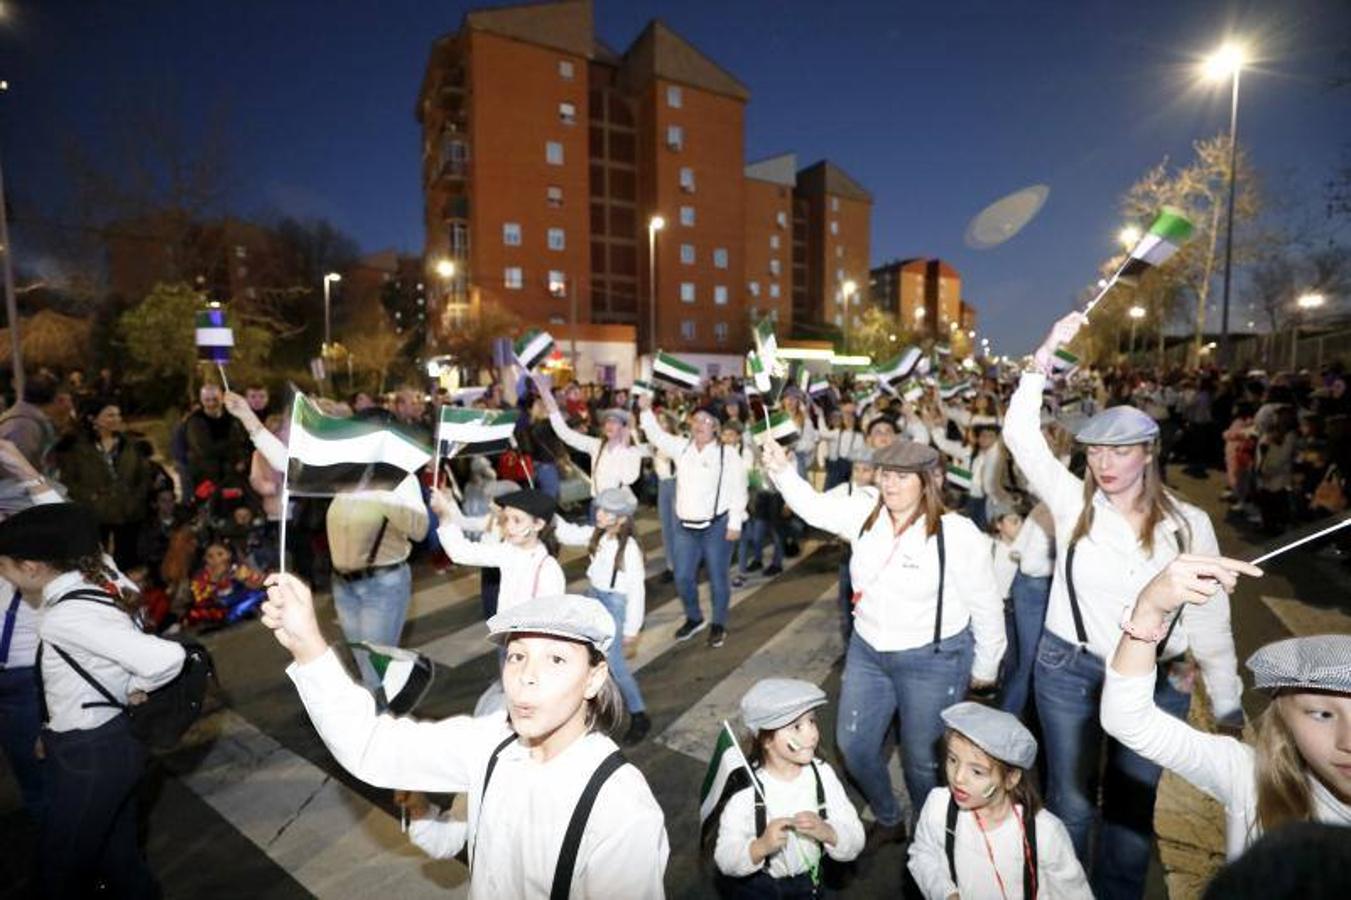 El grupo más numeroso del desfile de Comparsas fue el del Colegio Diocesano, con 150 personas disfrazadas de '¡Aventureros al tren!'